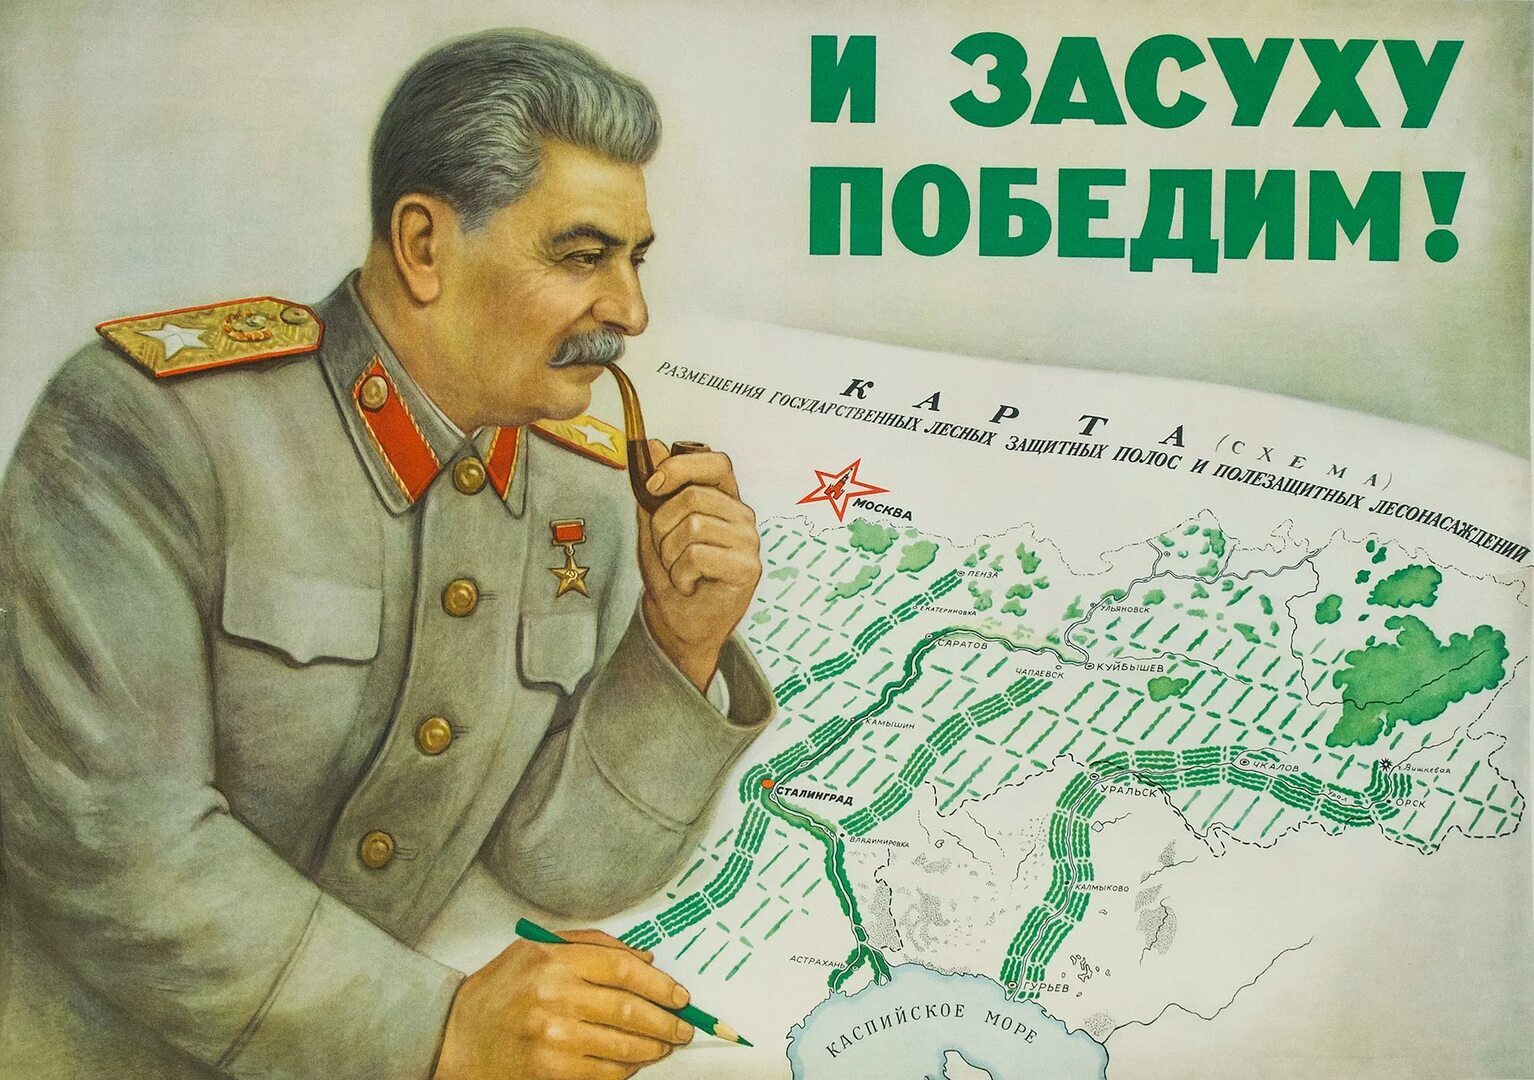 Сталин конопля конопля в руках слушать онлайн